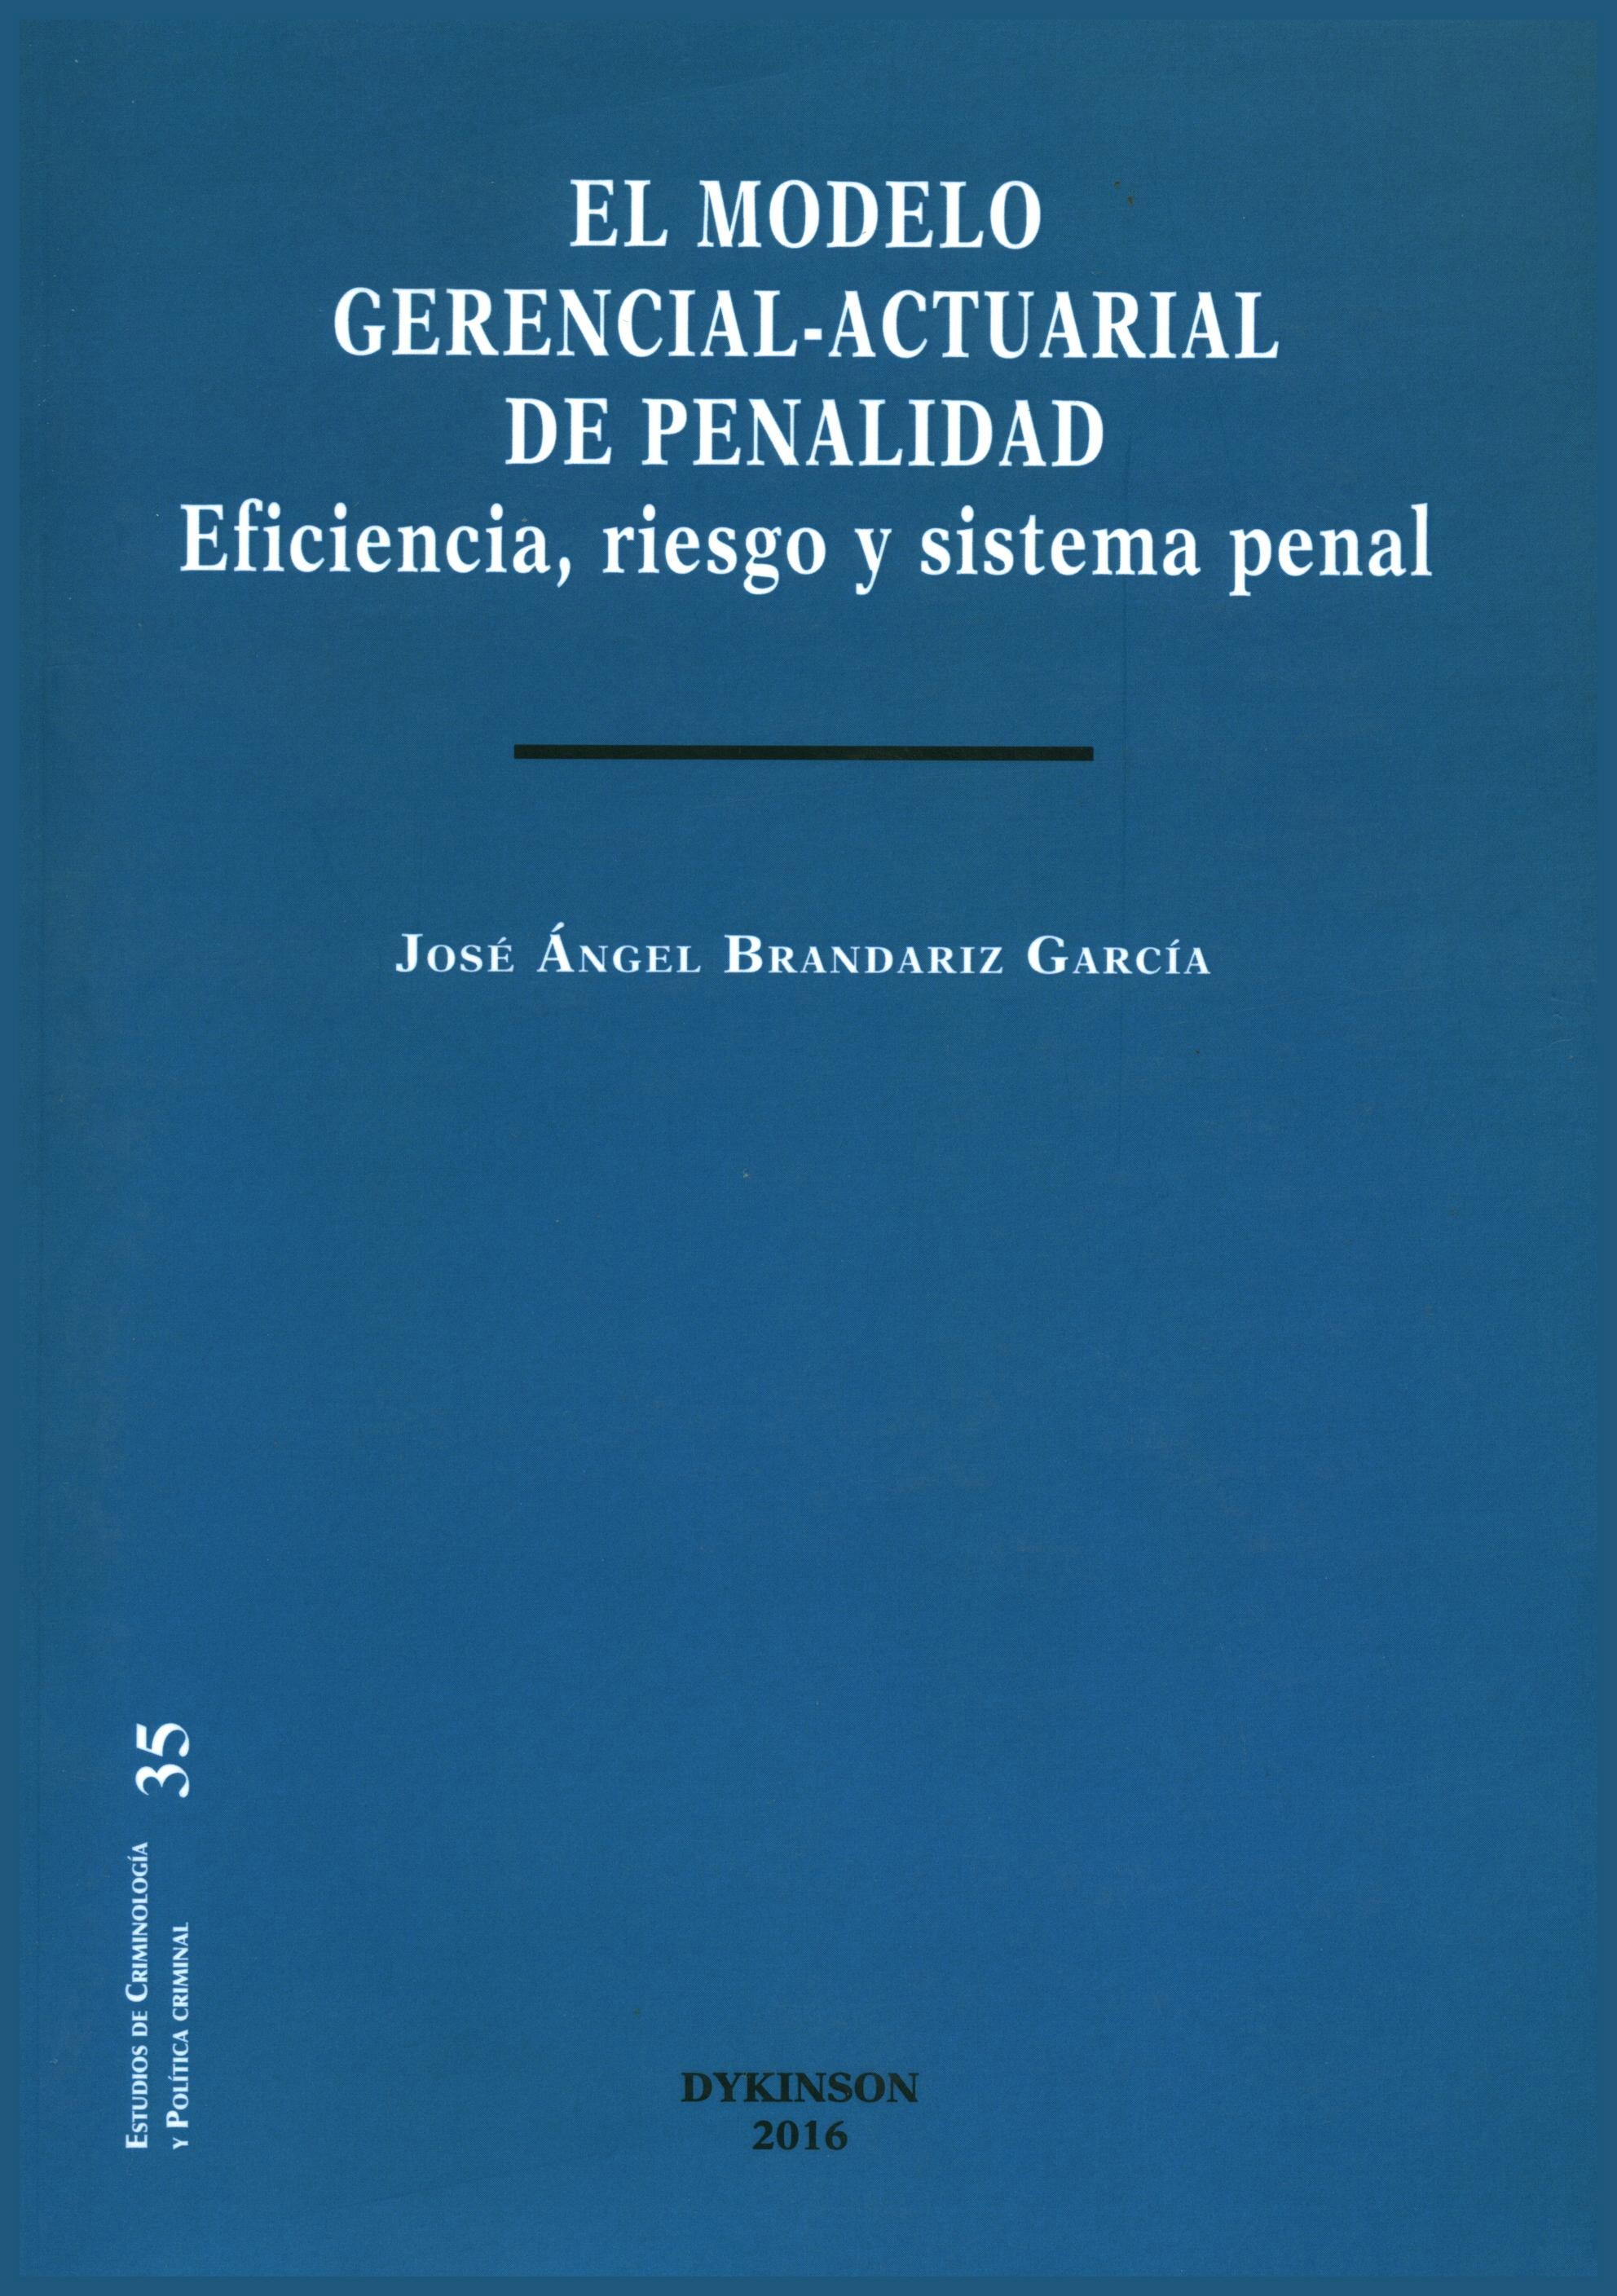 El modelo gerencial-actuarial de penalidad. Eficiencia, riesgo y sistema penal